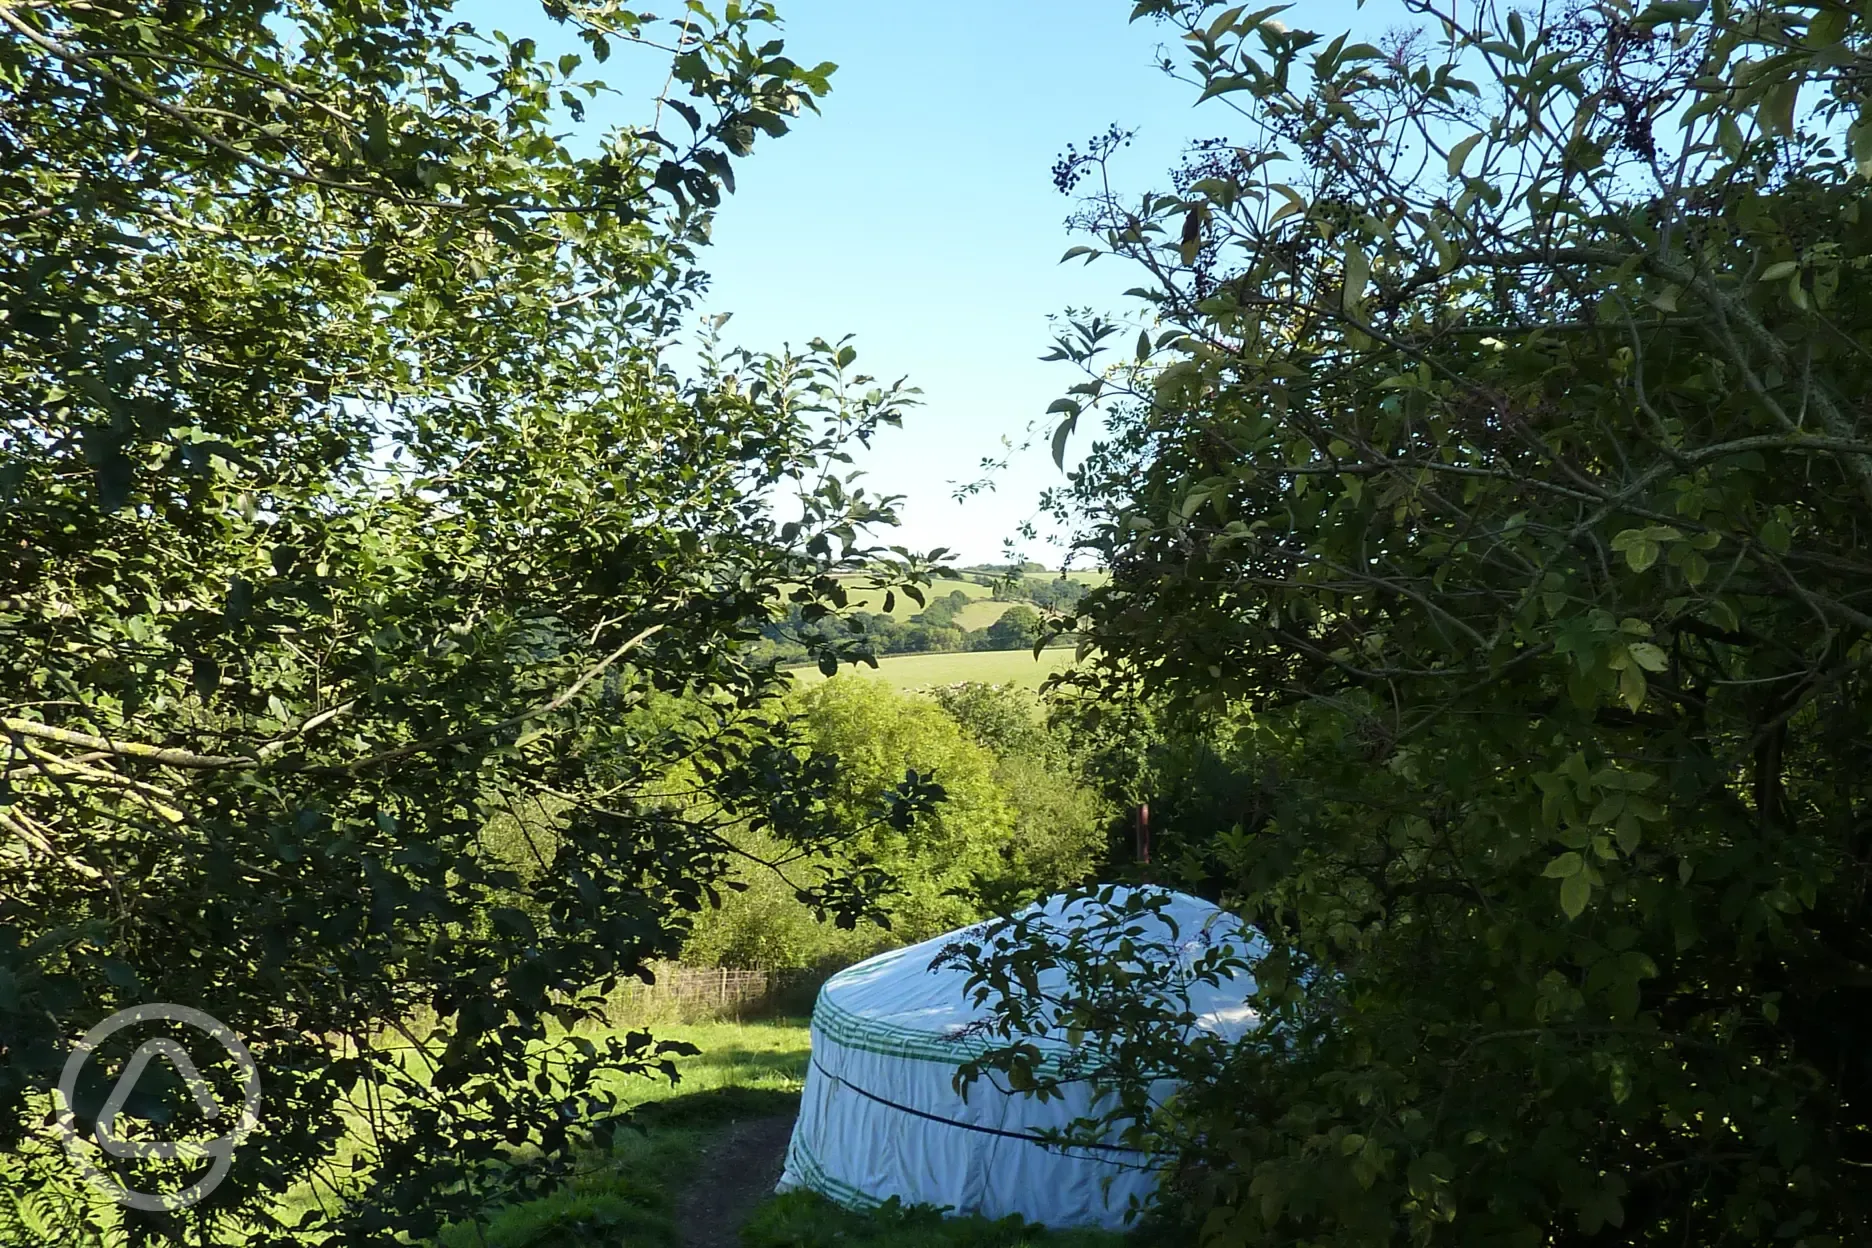 Path to yurt